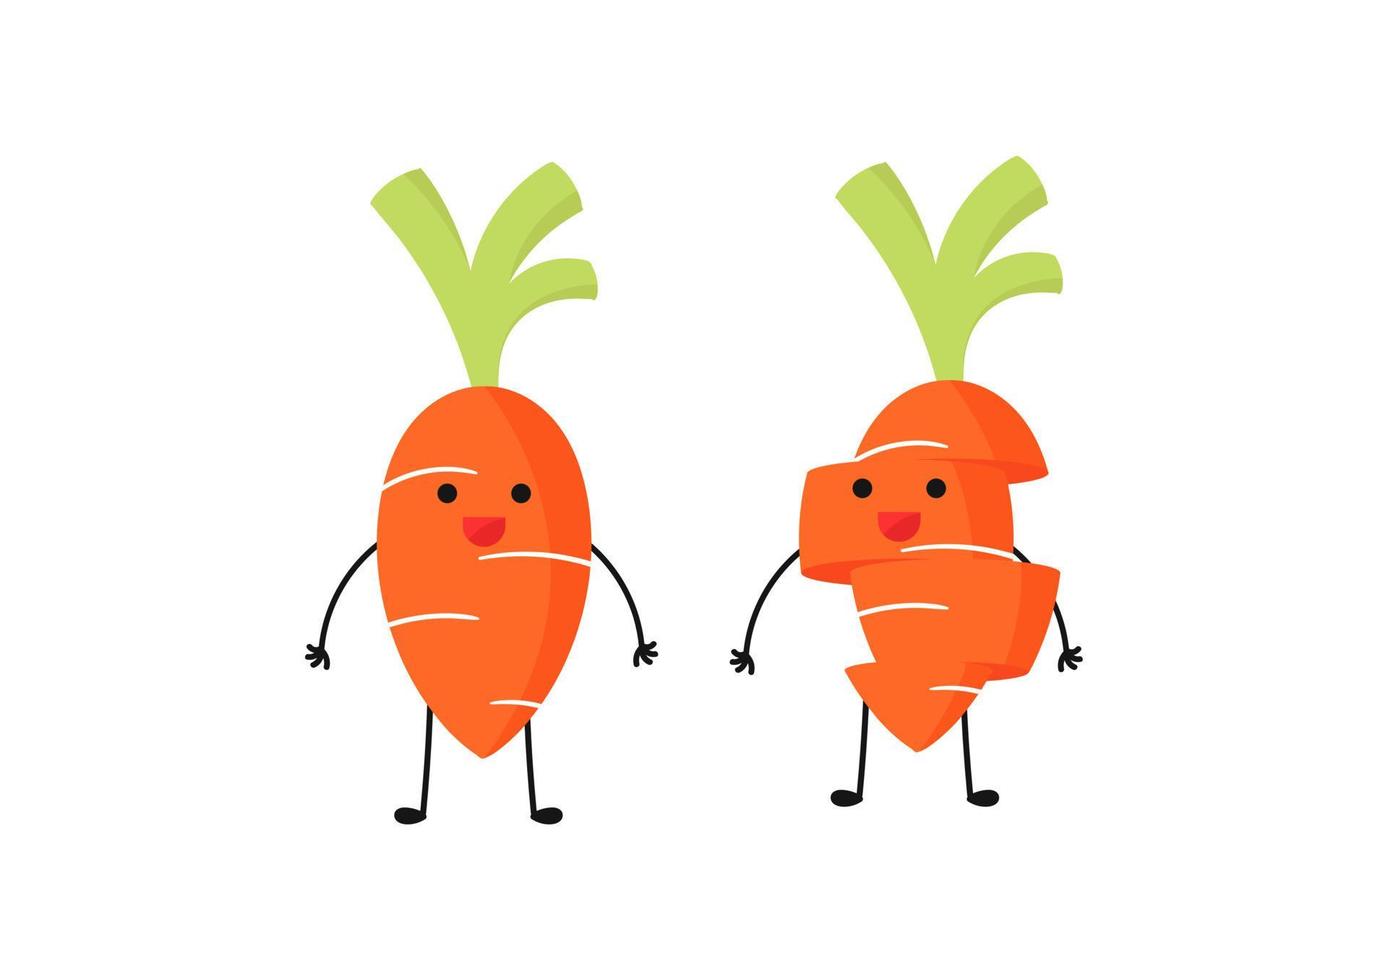 illustrazione di un personaggio vegetale di carota vettore